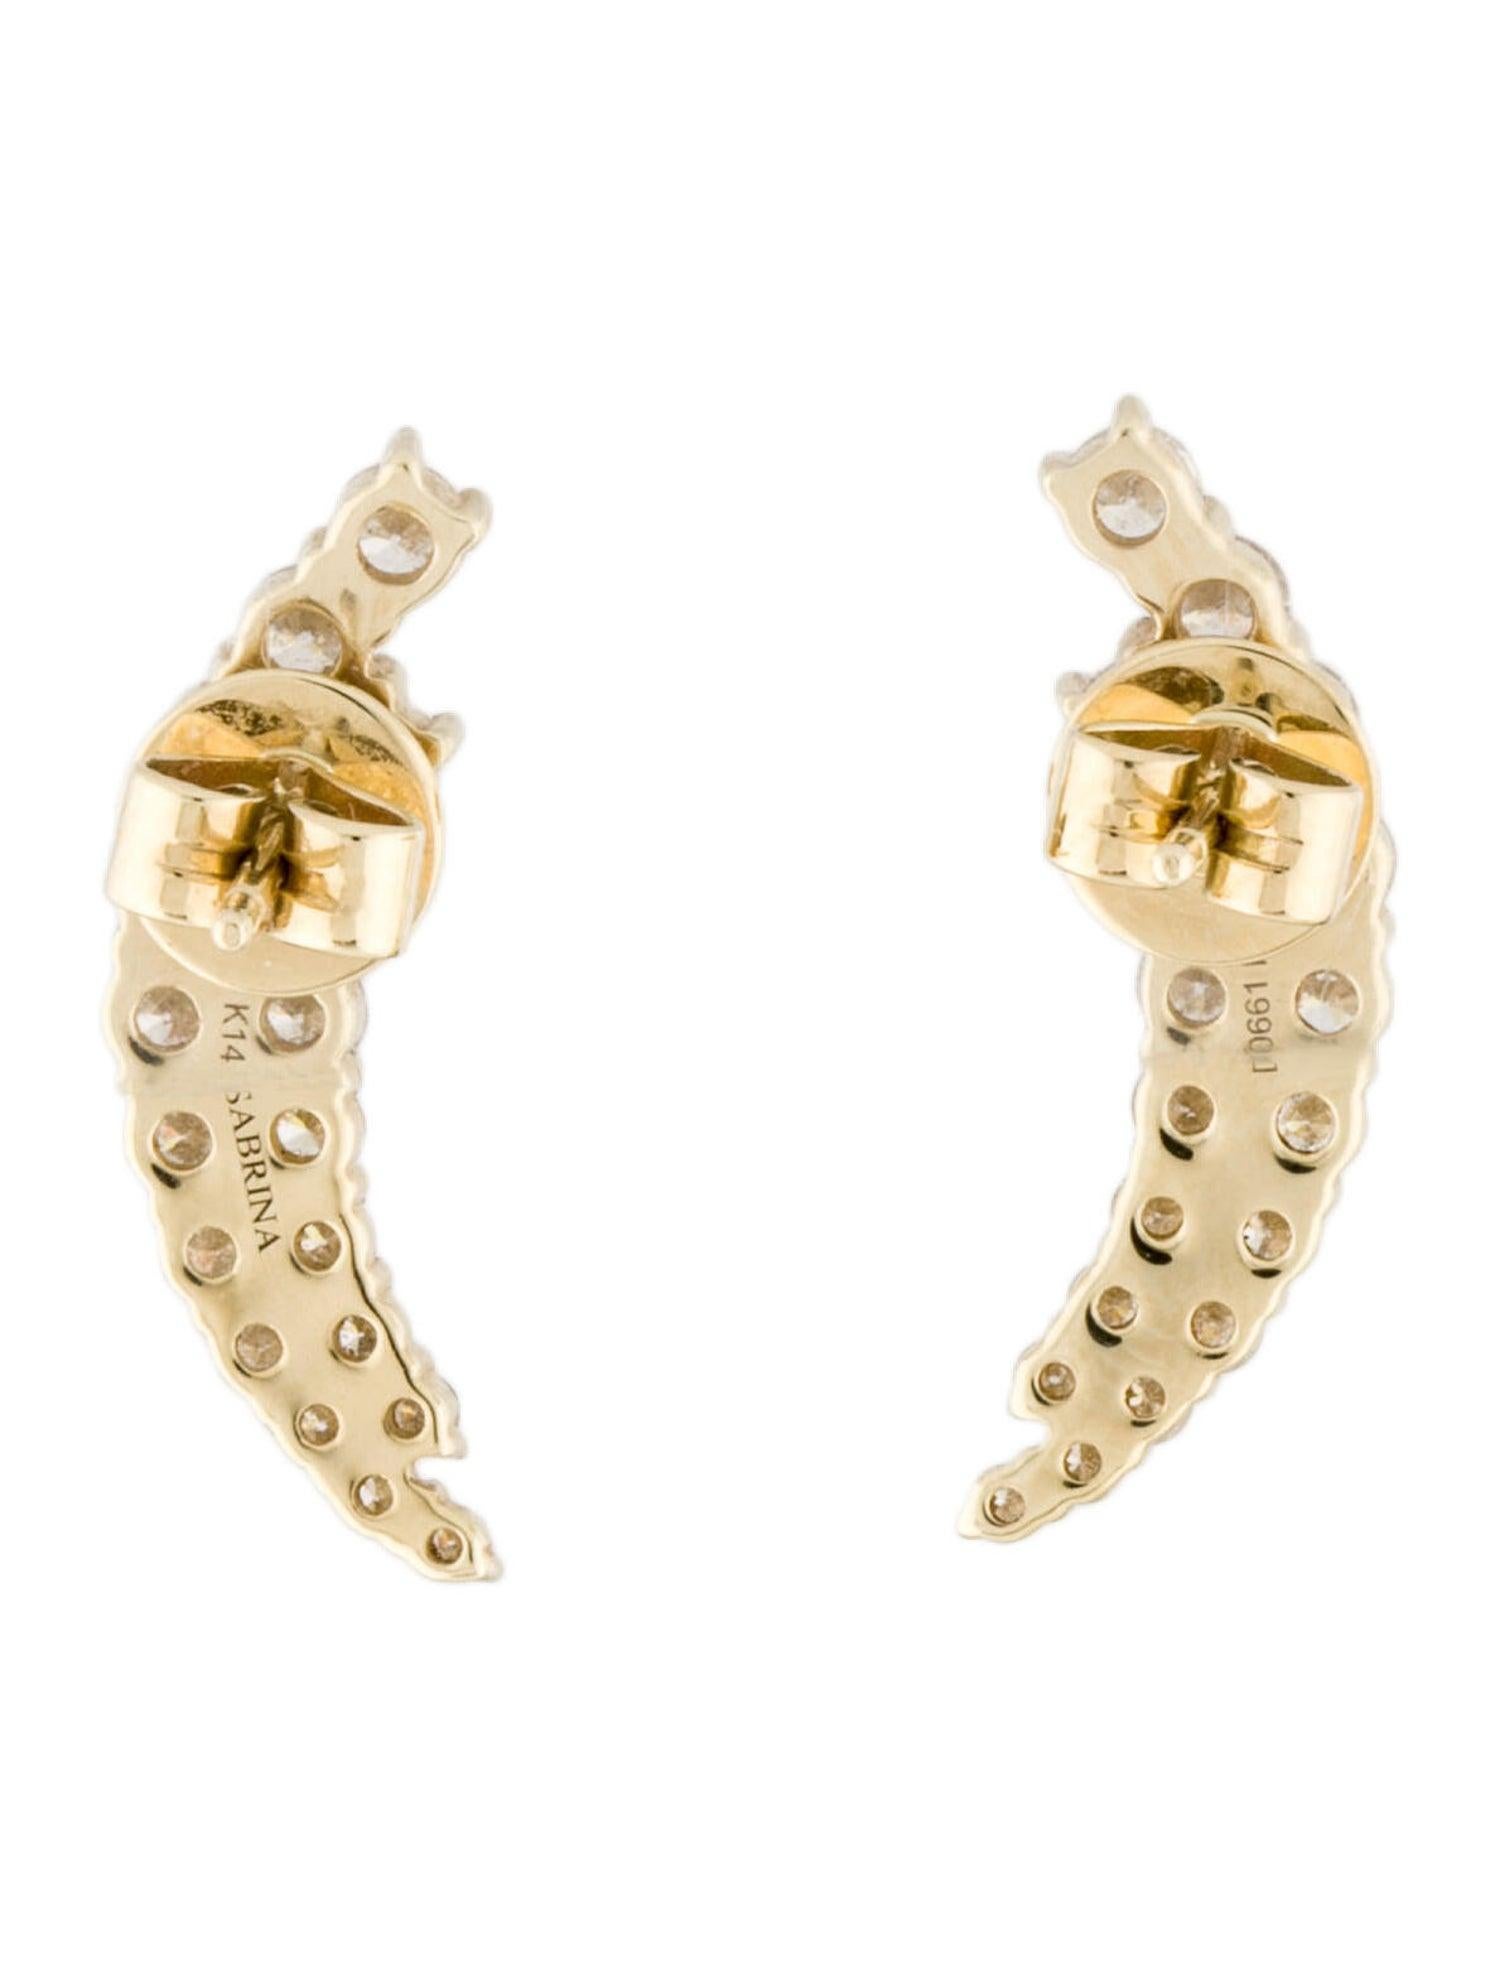 Diese eleganten und stilvollen Ohrclimber-Diamant-Ohrringe werden alle Blicke auf sich ziehen! Gefertigt aus 14K Gold mit ca. 1,31 ct. natürlichen weißen Diamanten GH-SI Farbe und Klarheit. Erhältlich in den Varianten Weiß-, Rosé- und Gelbgold.
-14K